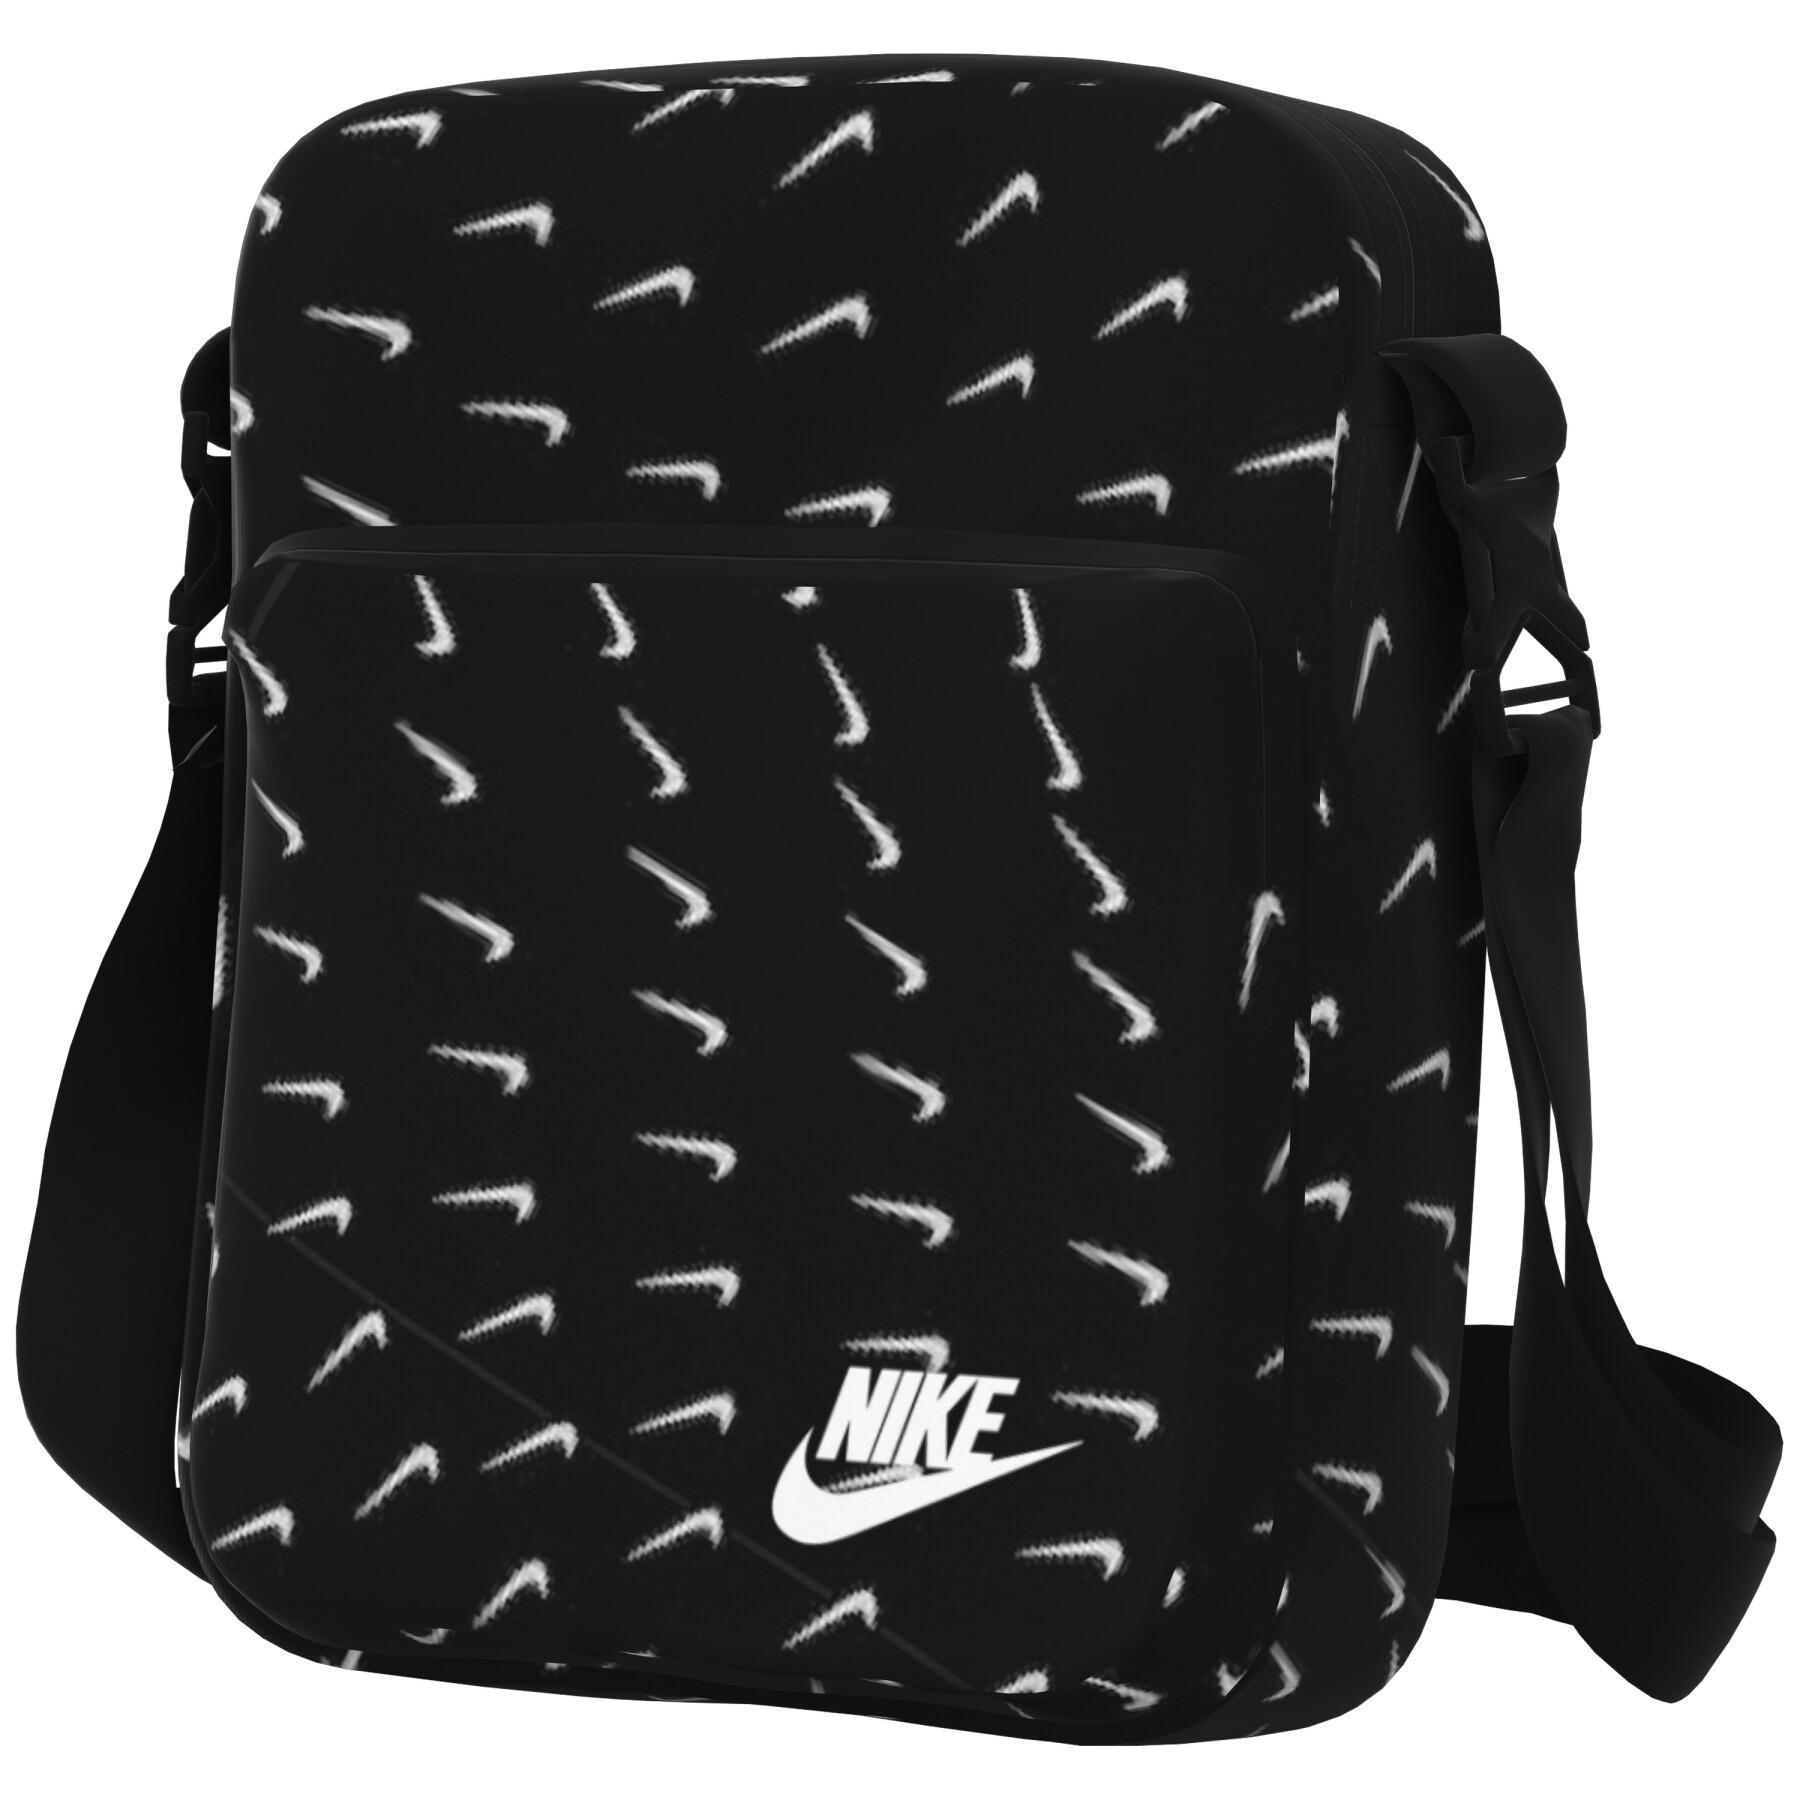 Shoulder bag Nike Heritage